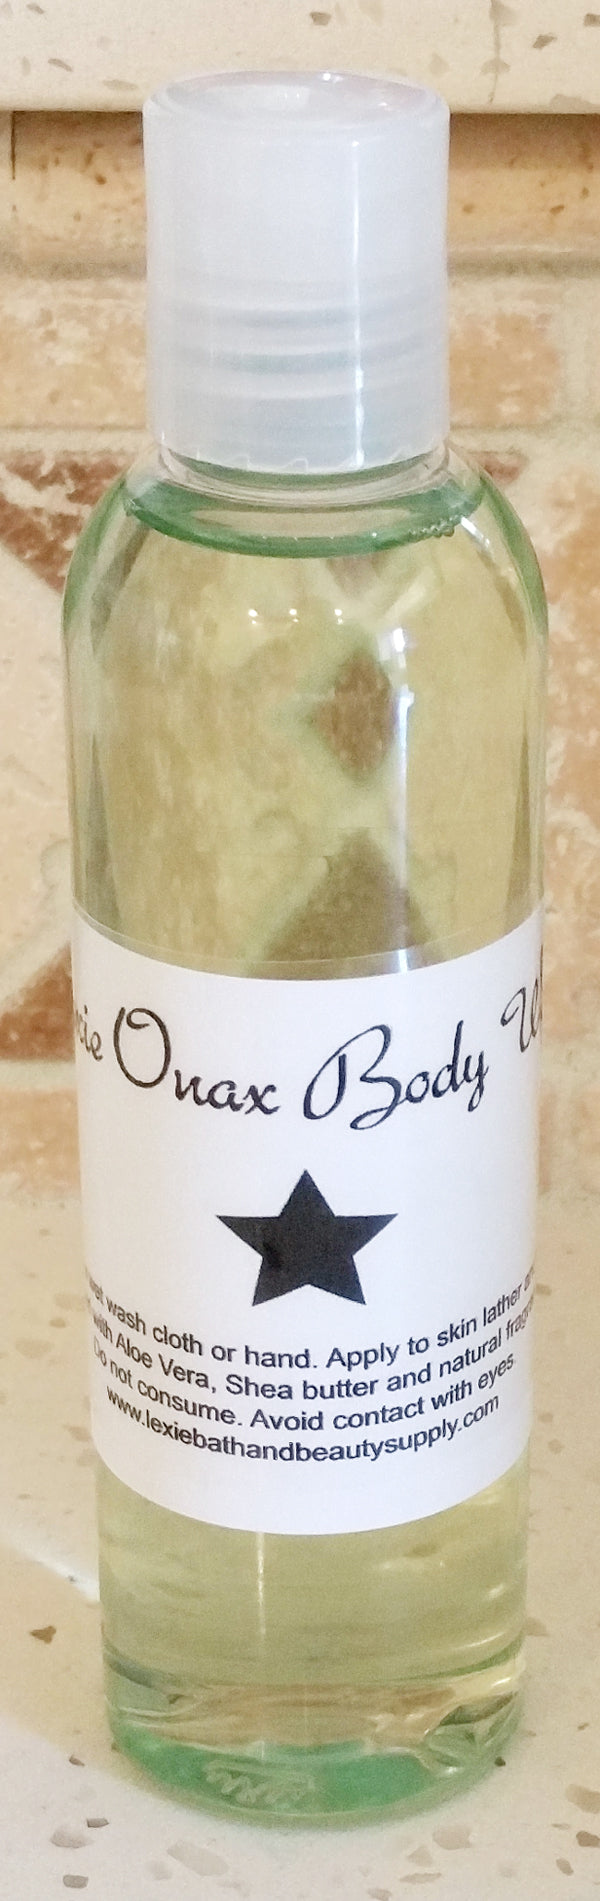 Lexie Onax Body Wash - Lexie Bath and Beauty Supply